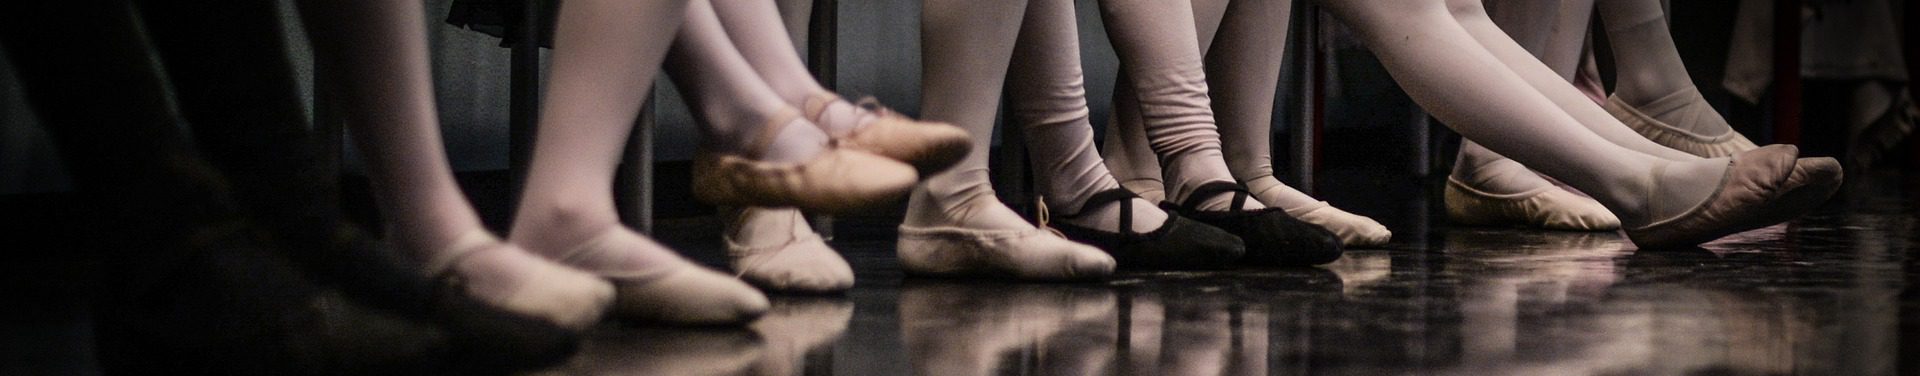 Ballettstudio-MZ Oppenheim